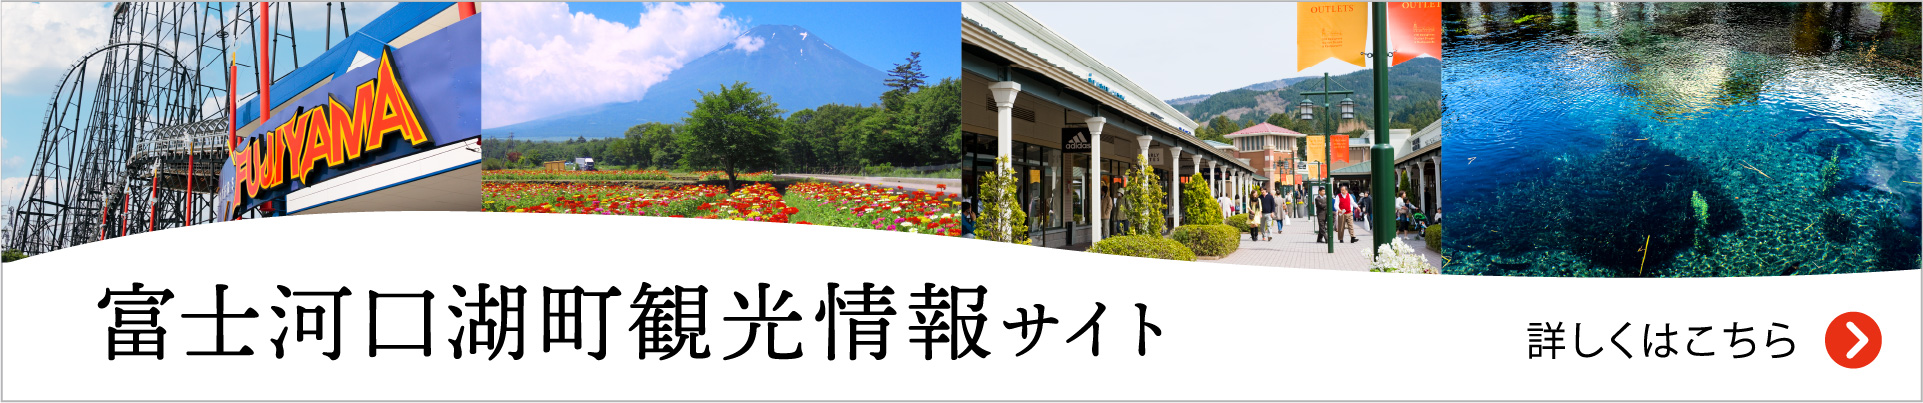 富士河口湖町観光情報サイト公式サイトへ